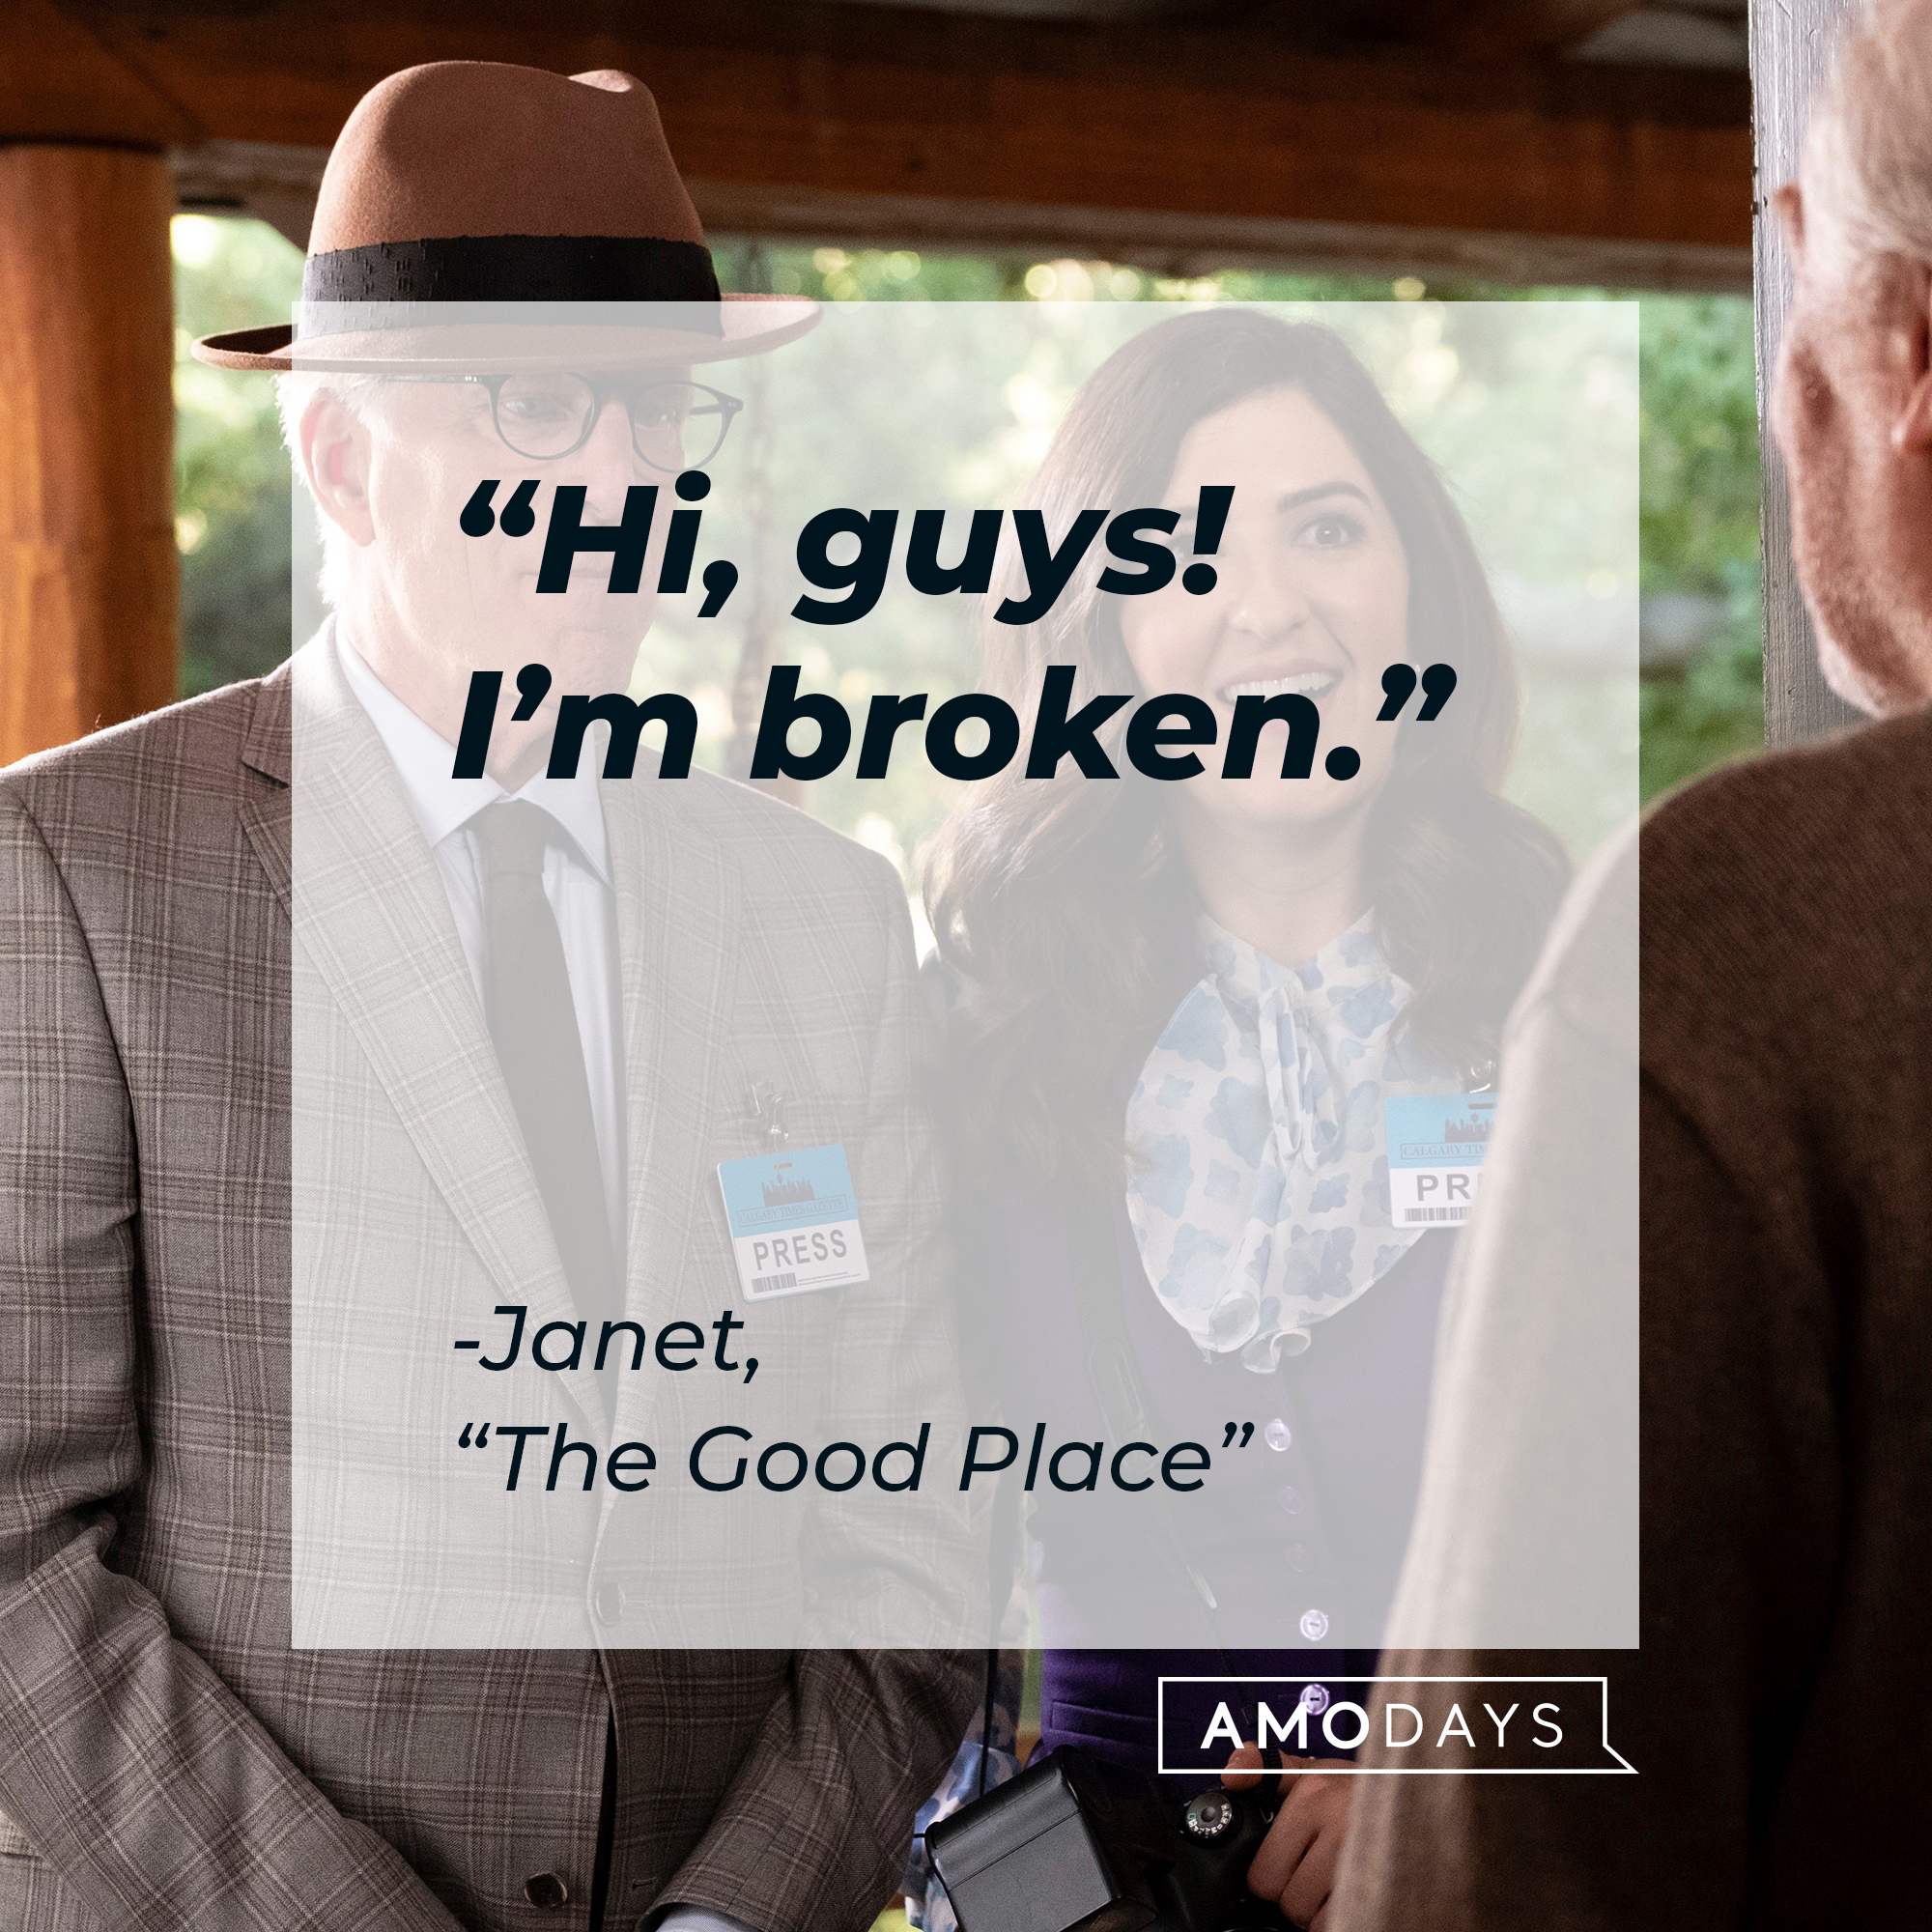 Janet's quote: “Hi, guys! I’m broken.”| Source: facebook.com/NBCTheGoodPlace